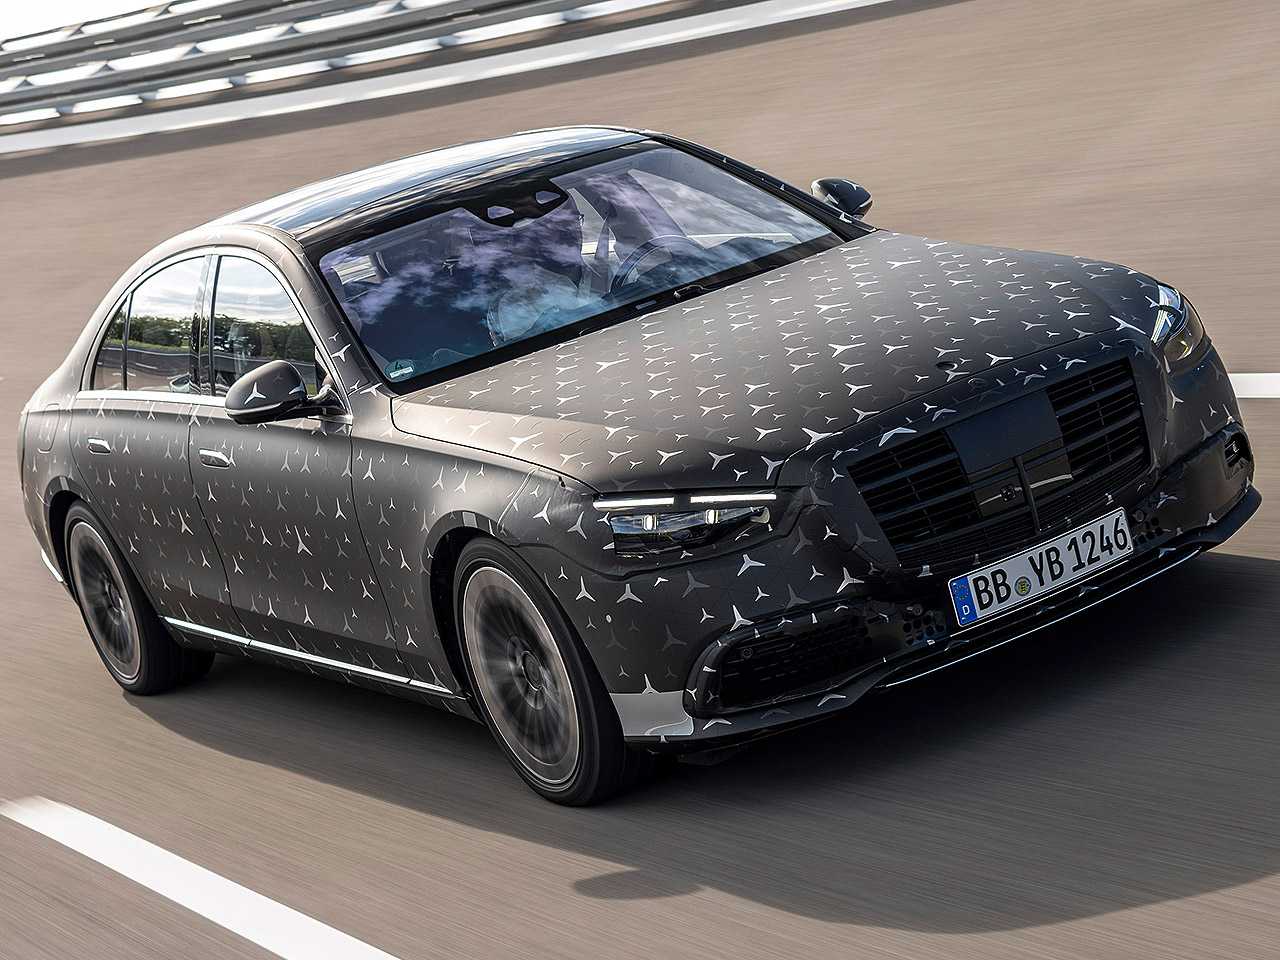 Acima a nova geração do Mercedes-Benz Classe S ainda camuflada